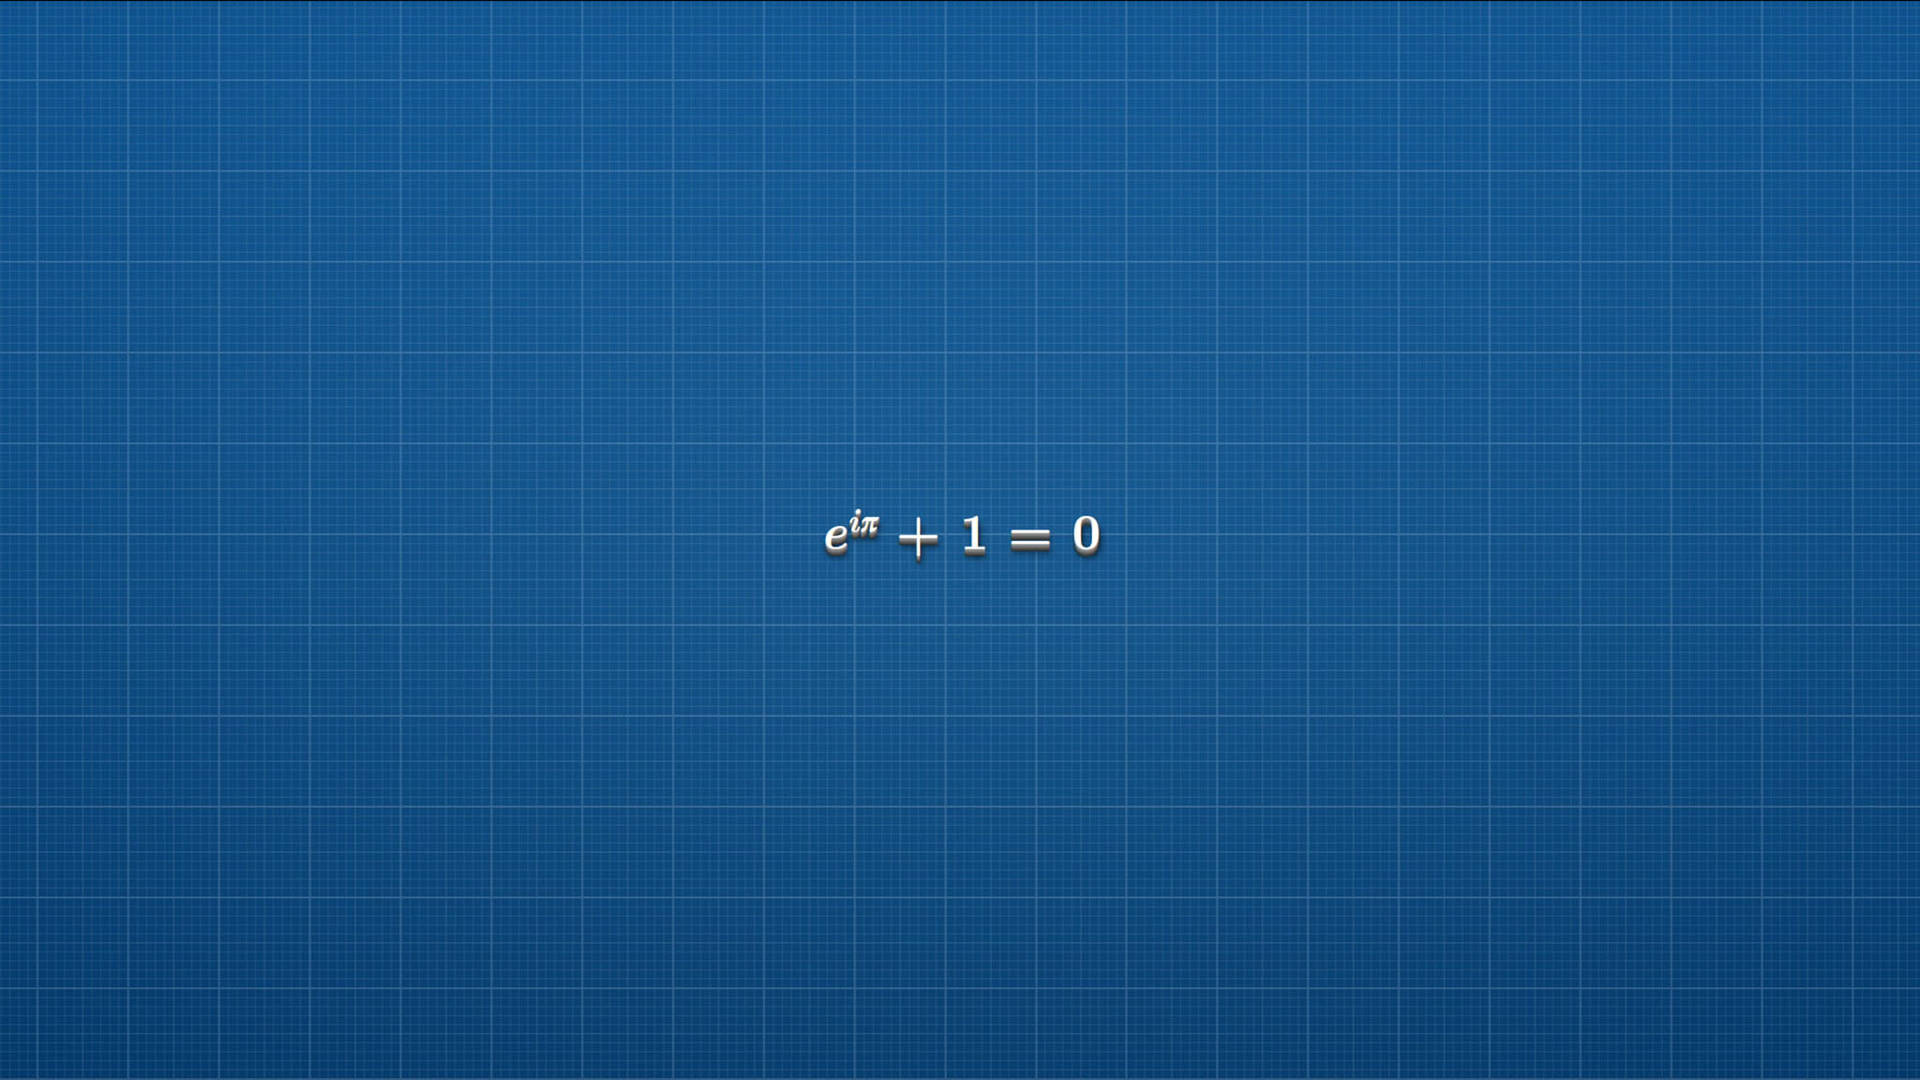 Euler Physics Equation Background